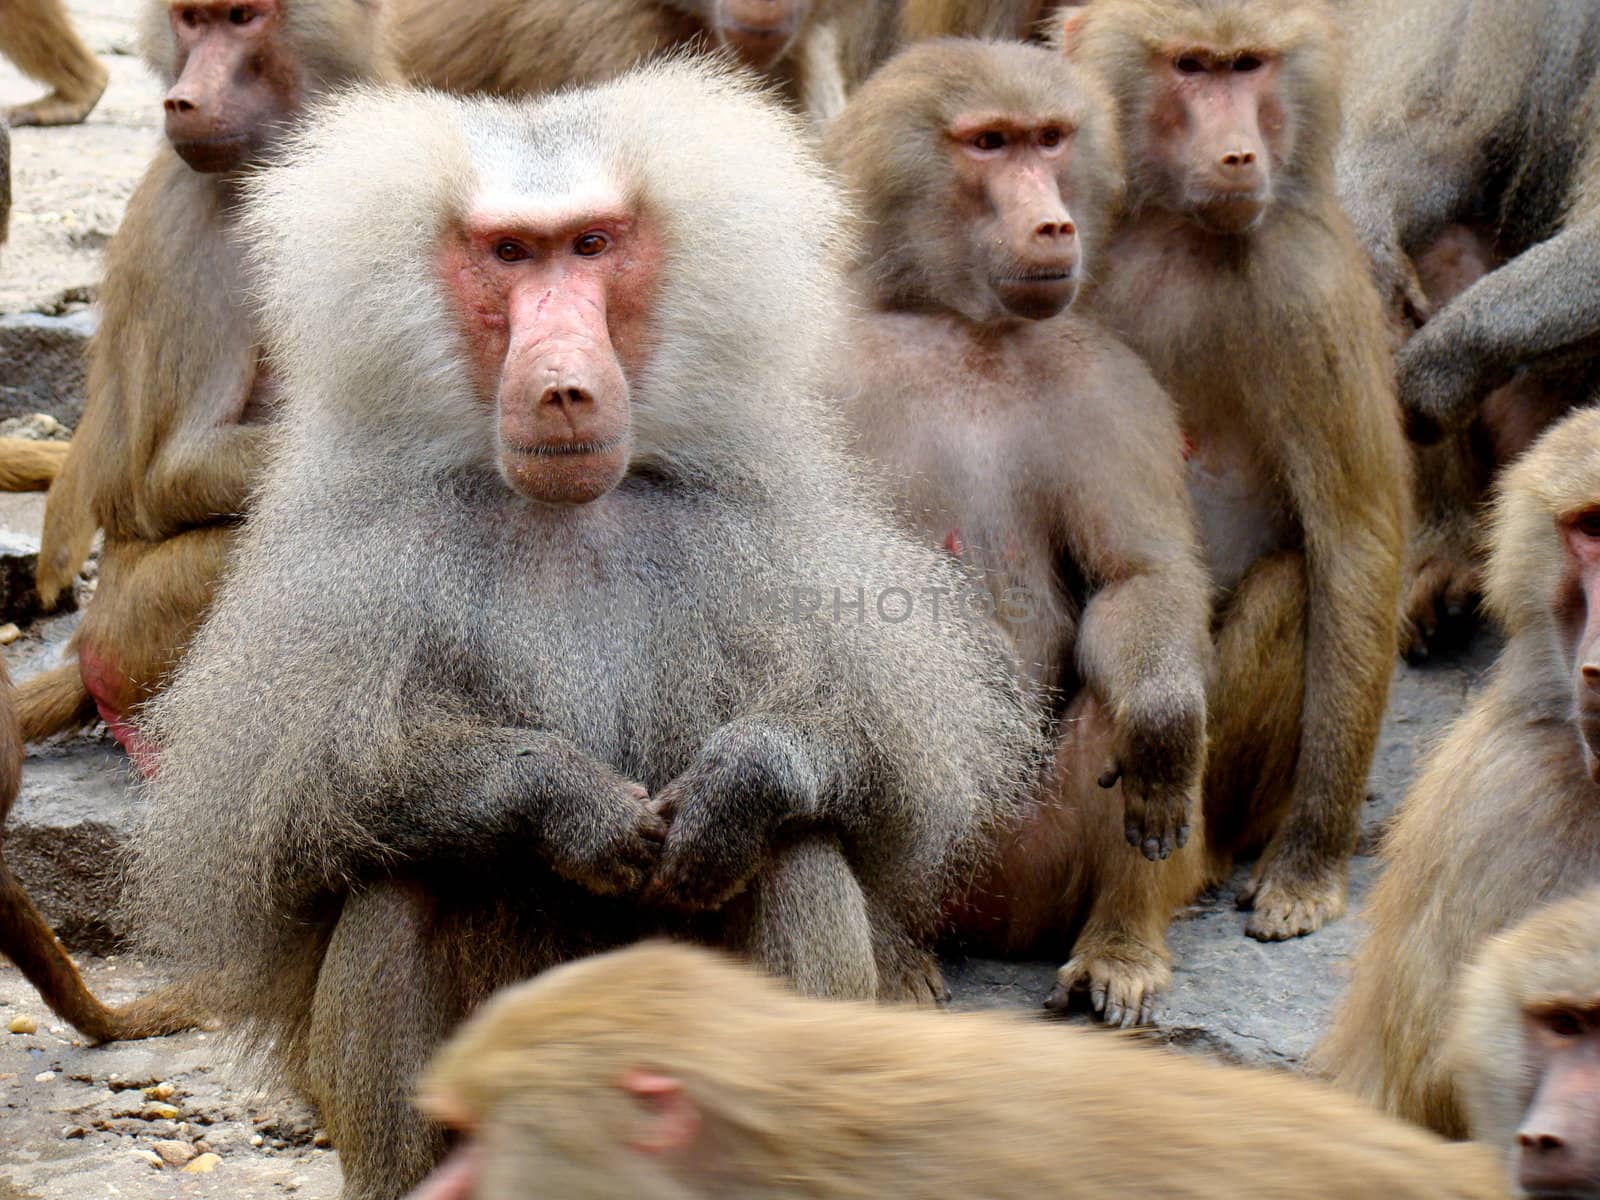 baboons on rocks waitng foor food